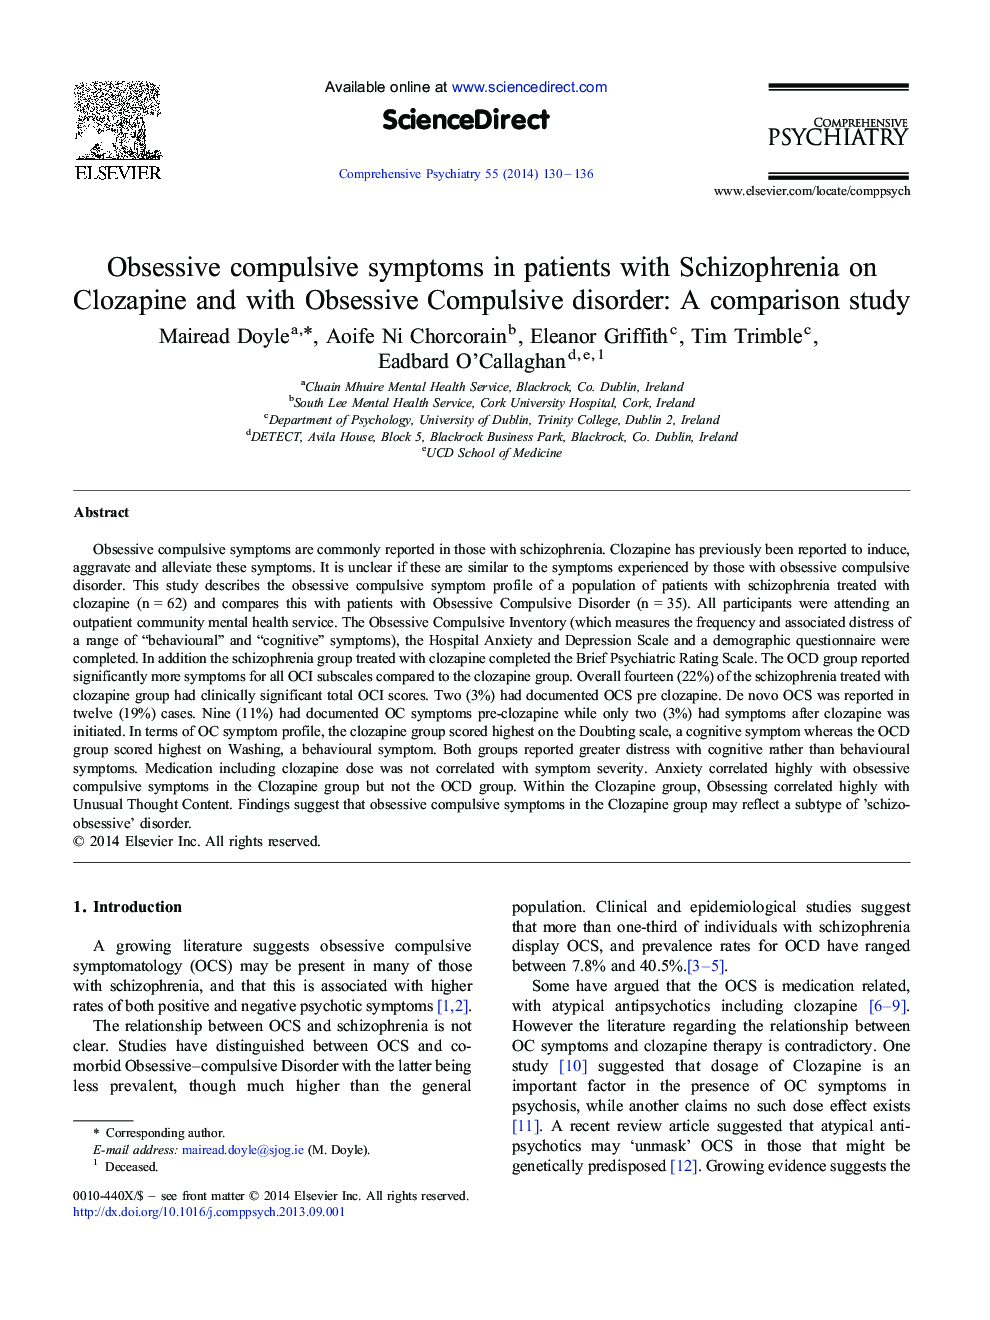 نشانه های اجباری وسواسی در بیماران مبتلا به اسکیزوفرنی بر روی کلوزاپین و اختلال وسواس فکری: یک مطالعه مقایسه ای 